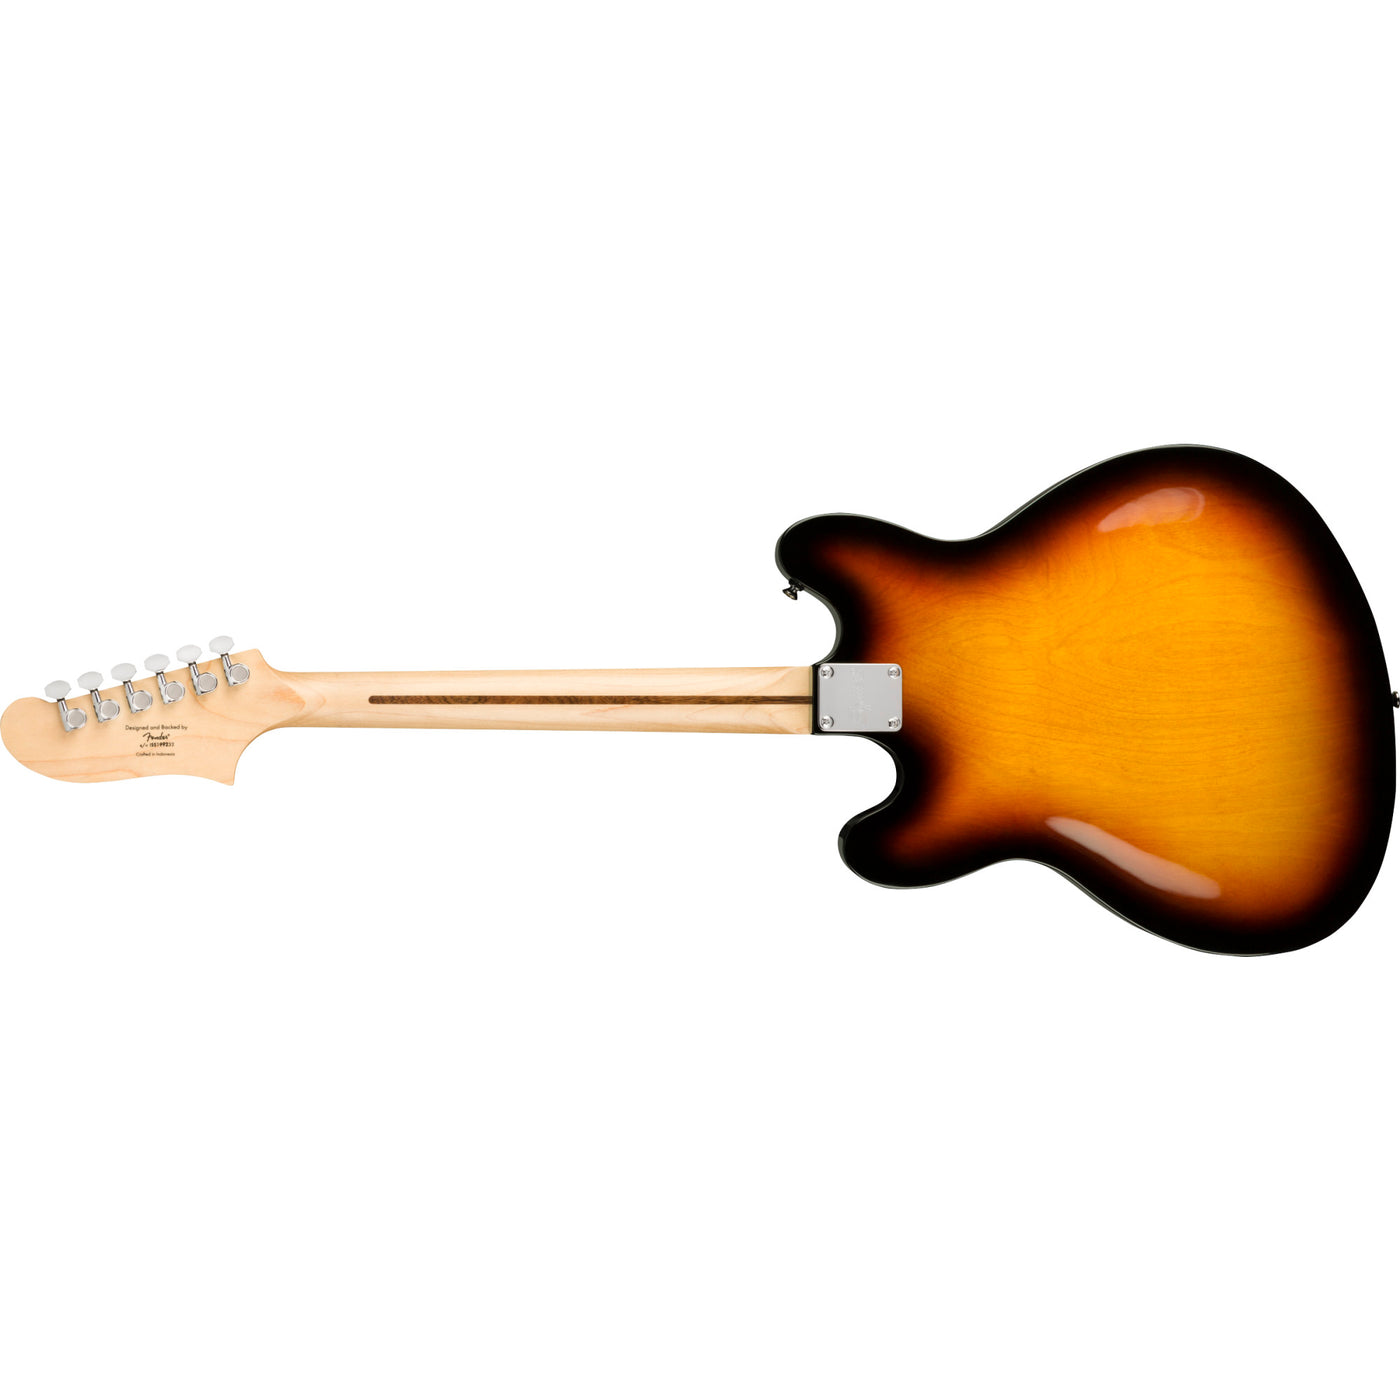 Fender Affinity Series Starcaster Electric Guitar, 3-Color Sunburst (0370590500)